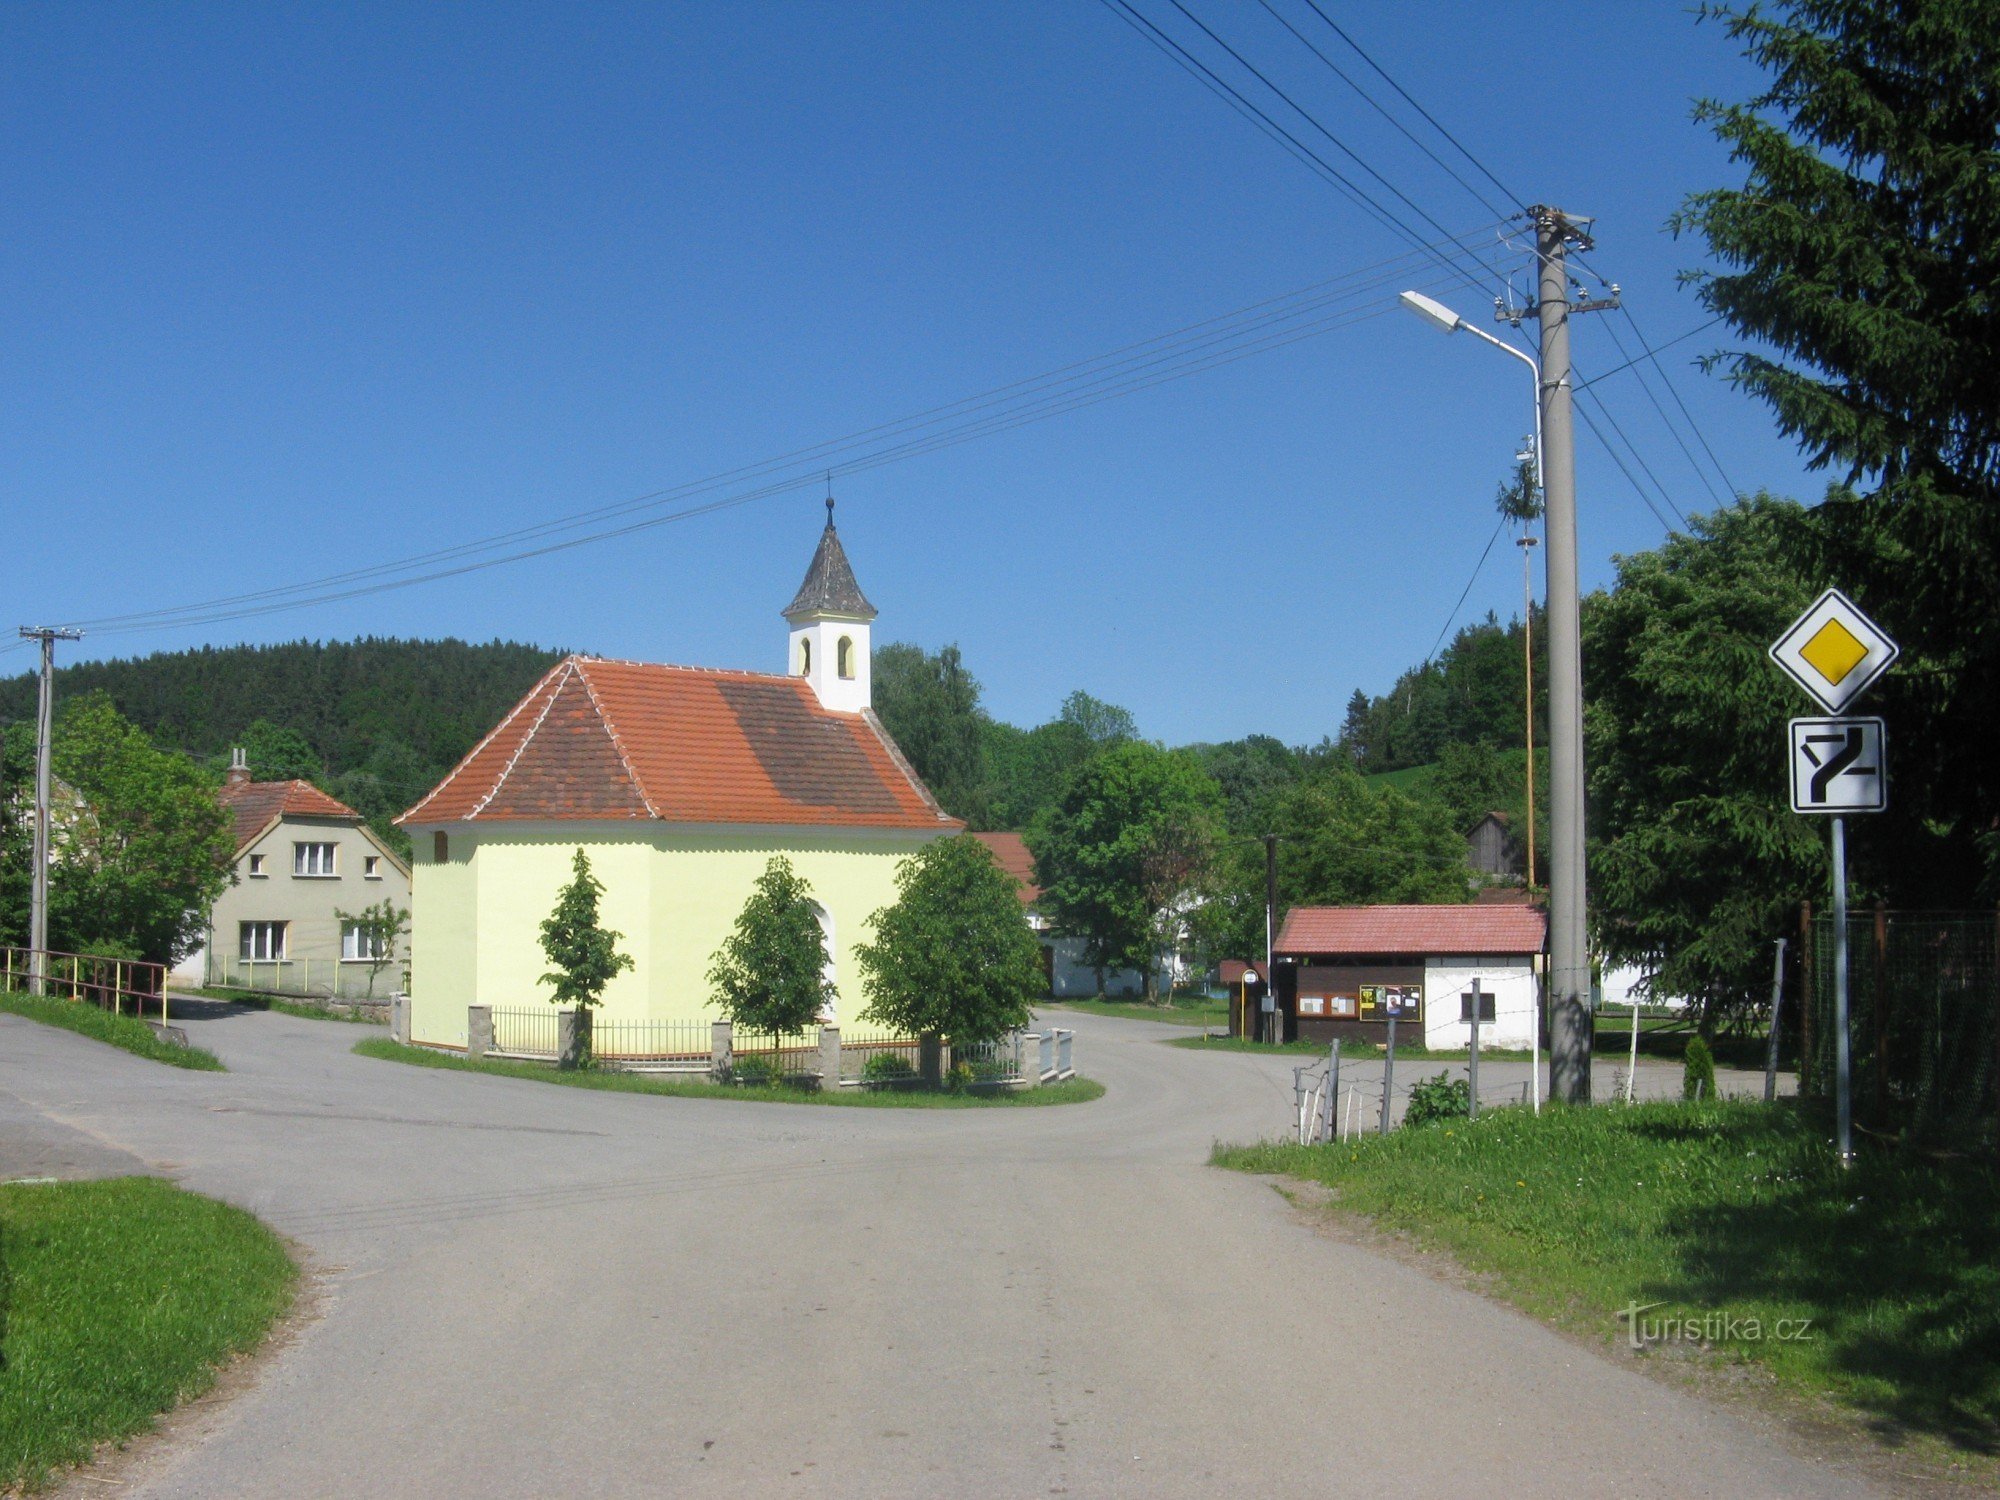 村子里的小教堂